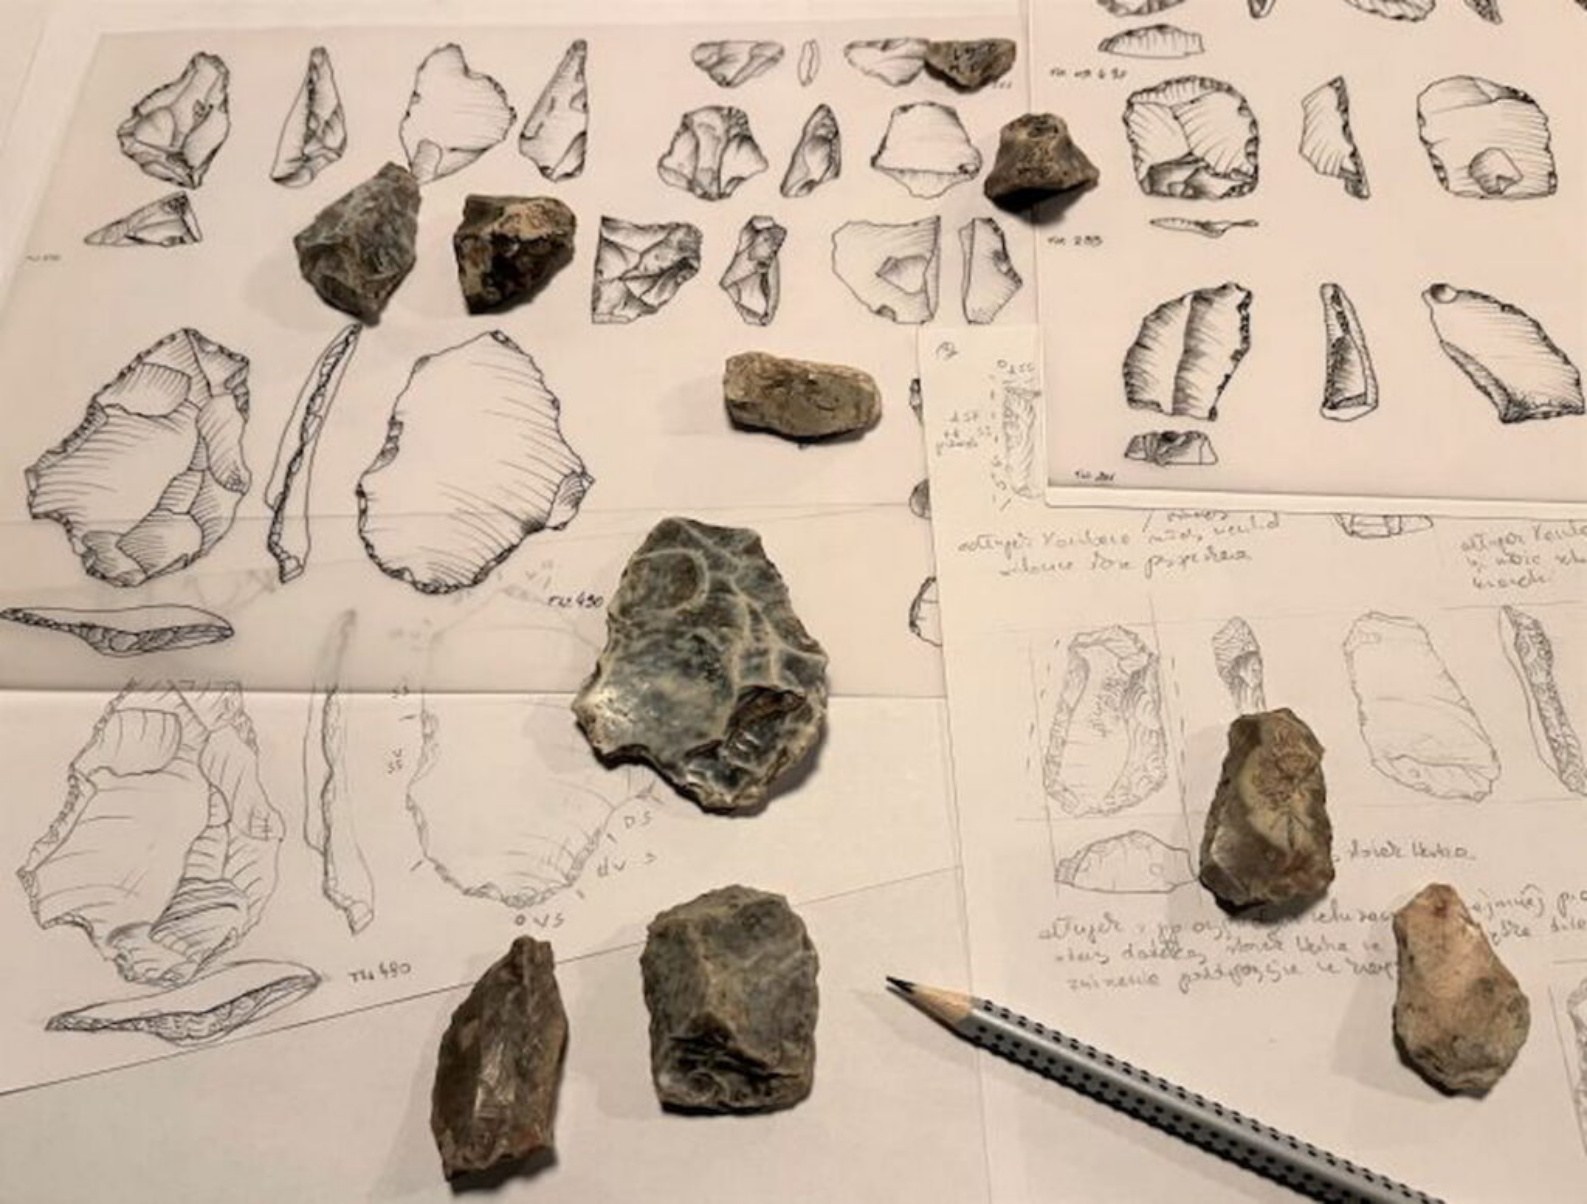 Vuurstenen artefacten uit de Tunel Wielki-grot, een half miljoen jaar geleden mogelijk gemaakt door Homo heildelbergensis.